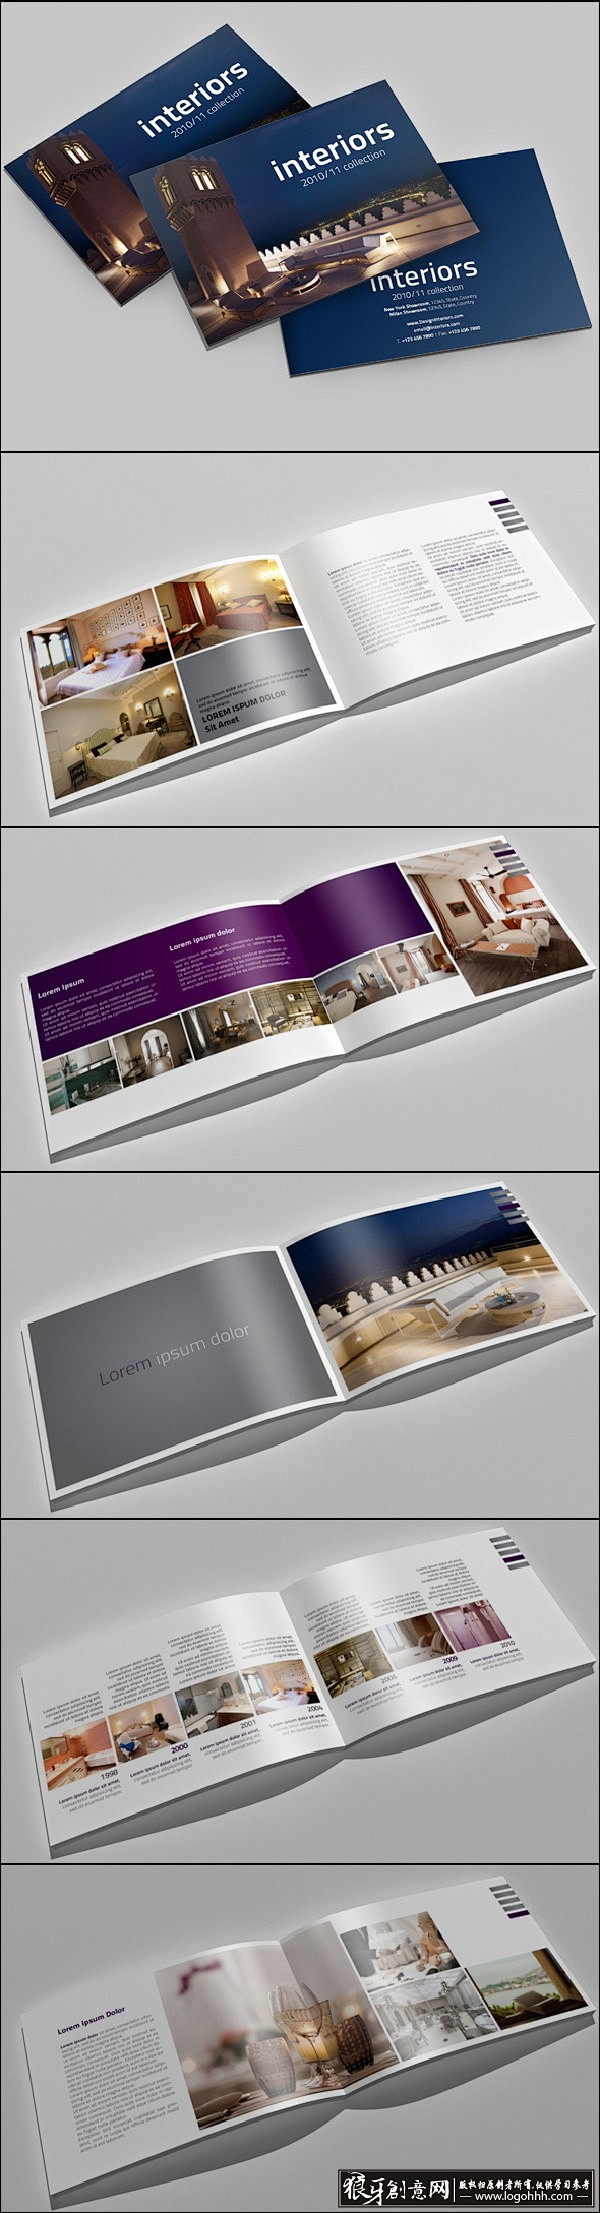 [创意画册] 国外宾馆画册设计展示 创意...